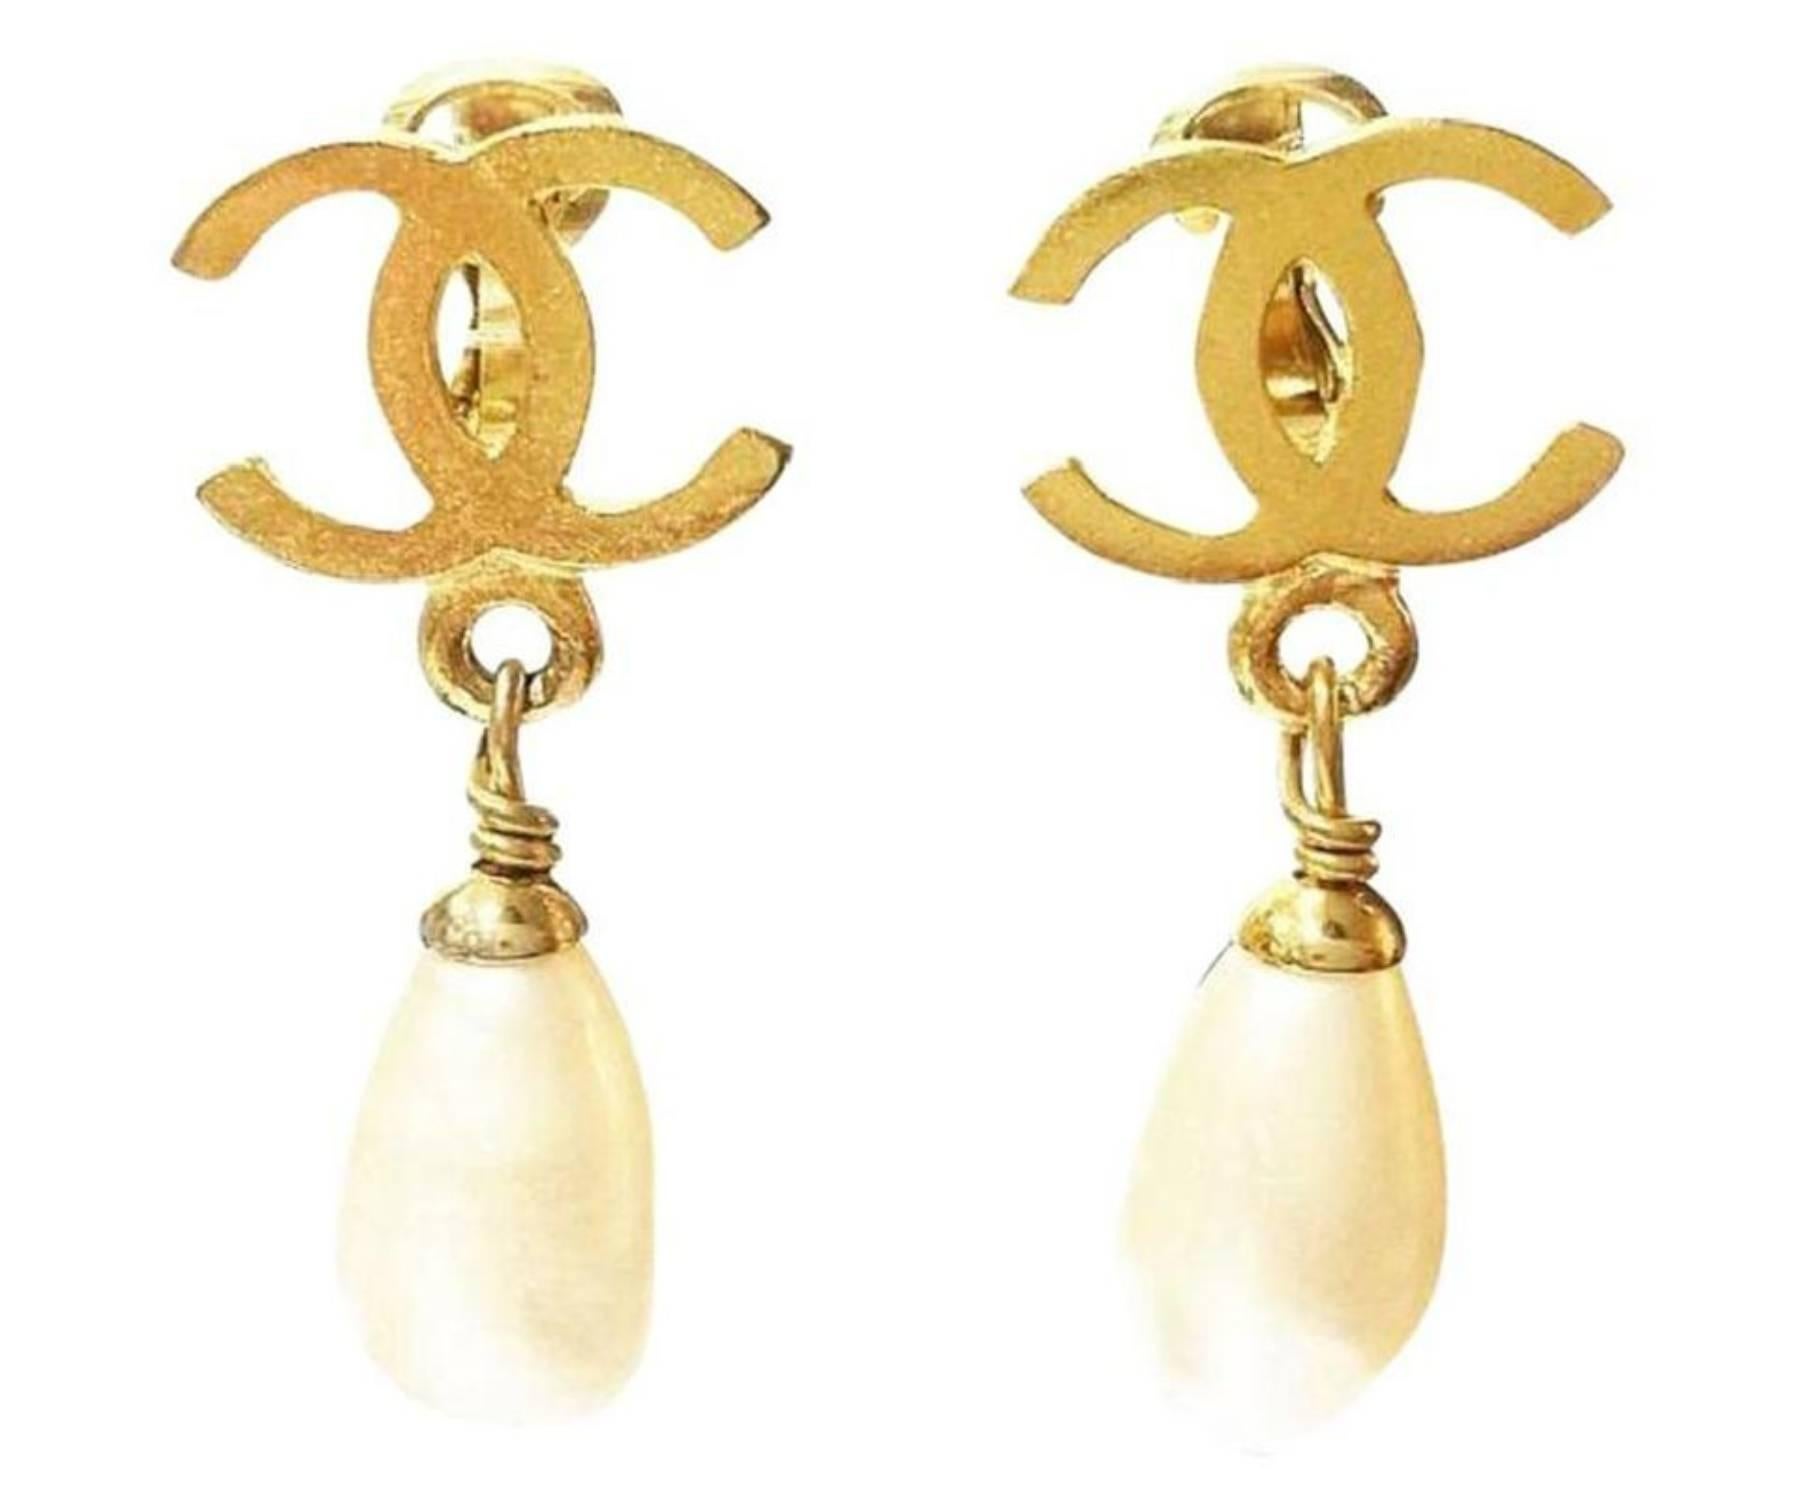 Chanel Vintage vergoldet CC Perle baumeln Clip auf Ohrringe

* Markiert 95
* Hergestellt in Frankreich
* Kommt mit dem Originalkarton 

- Sie ist etwa 1,25